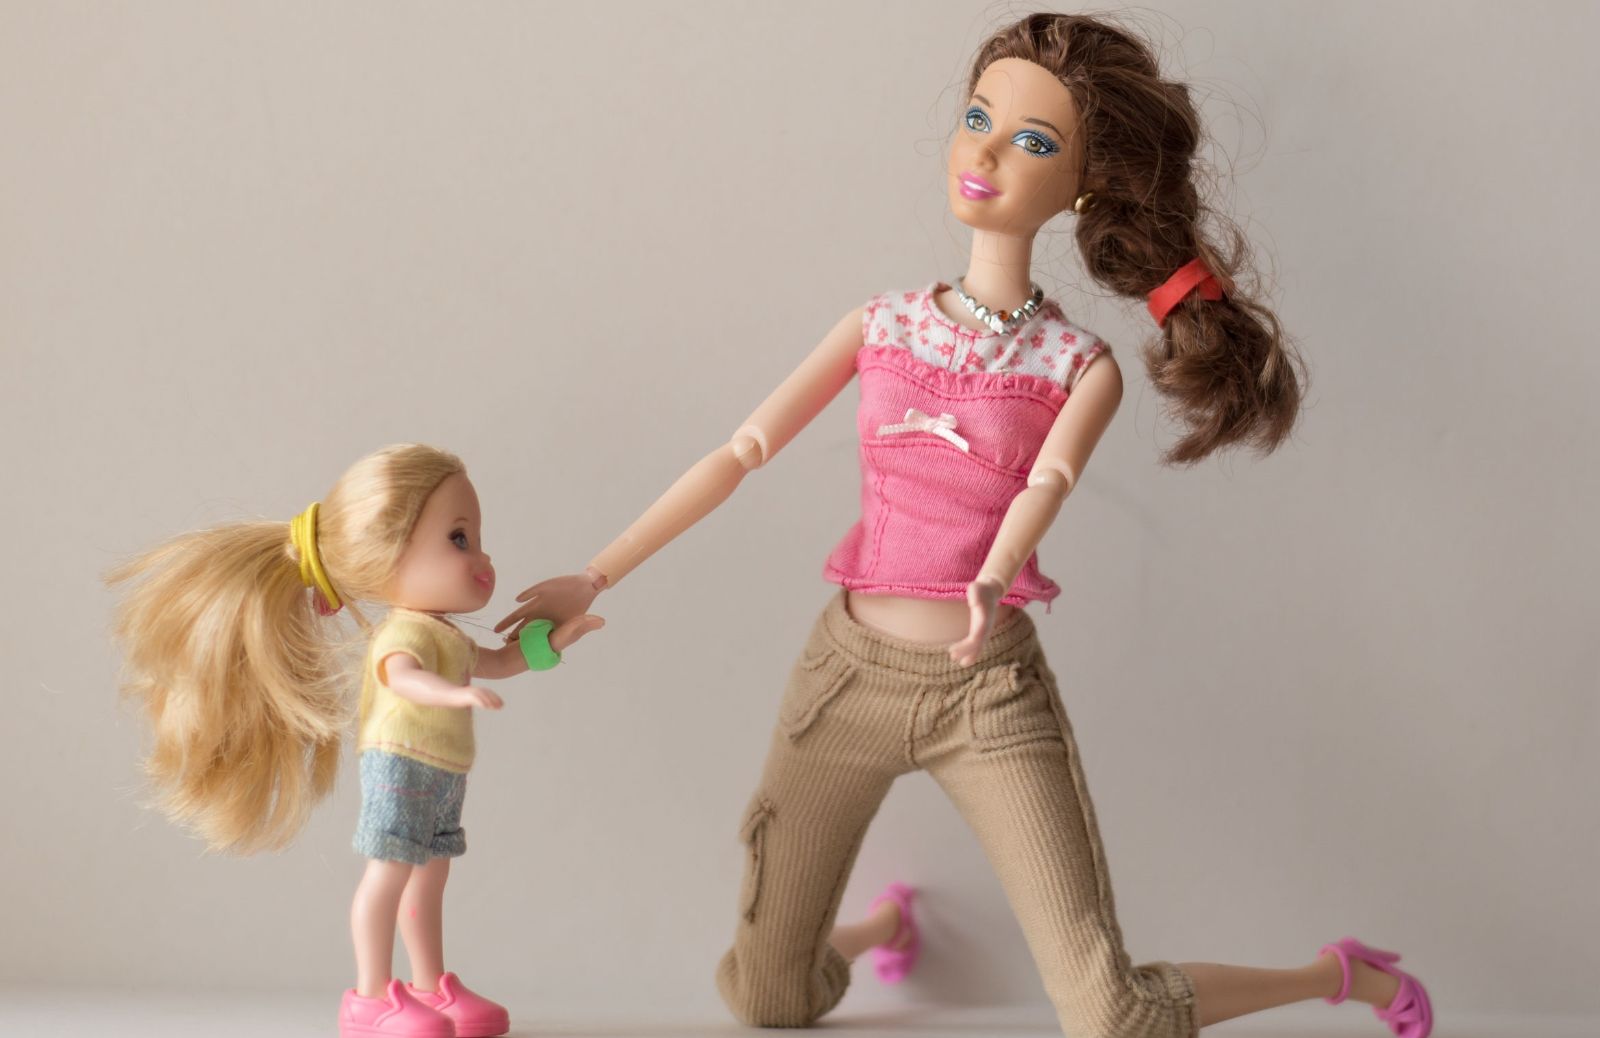 Le 10 Barbie più amate dalle bambine